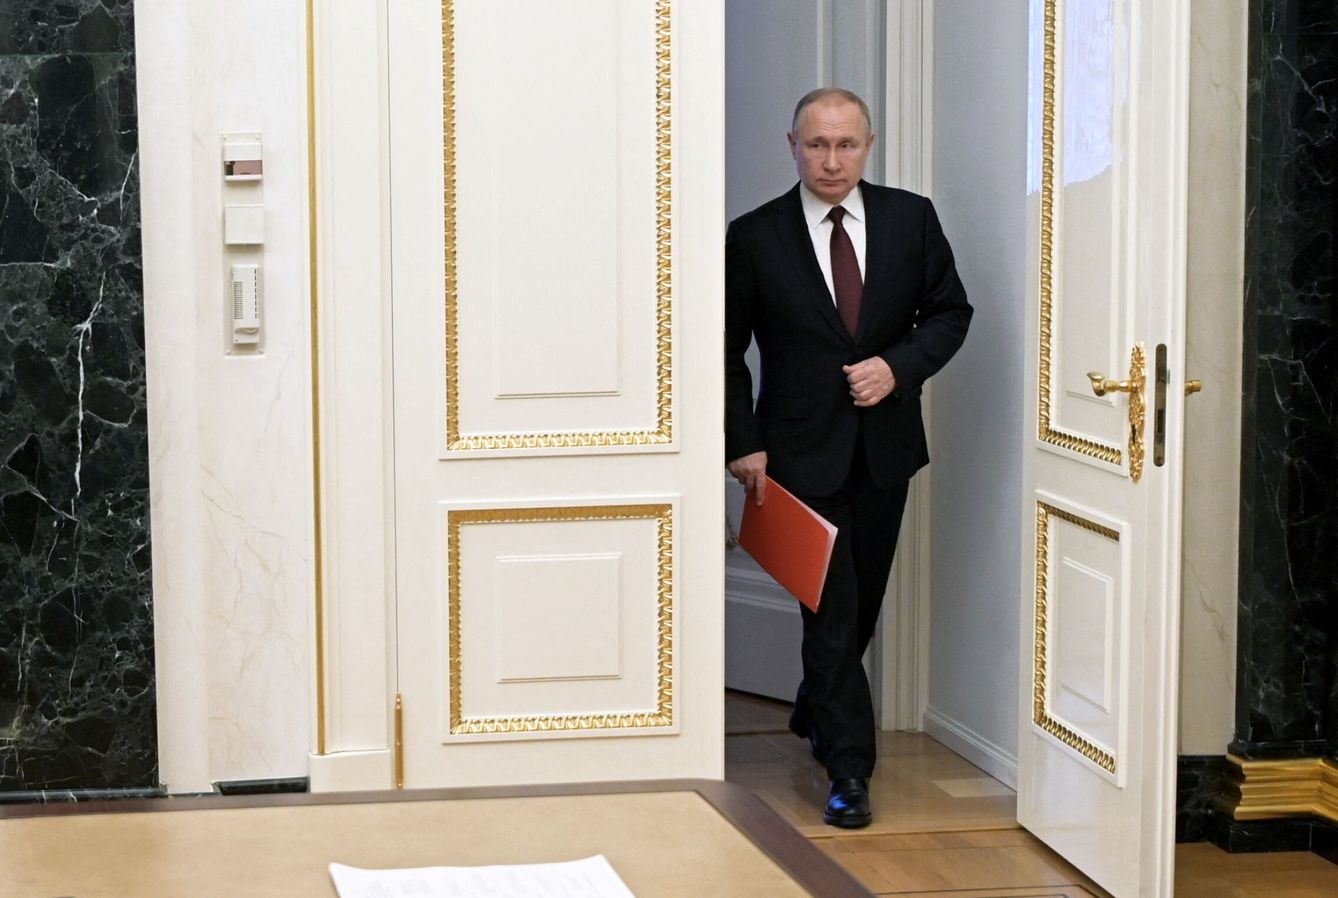 Vladimir Putin. (Reuters)